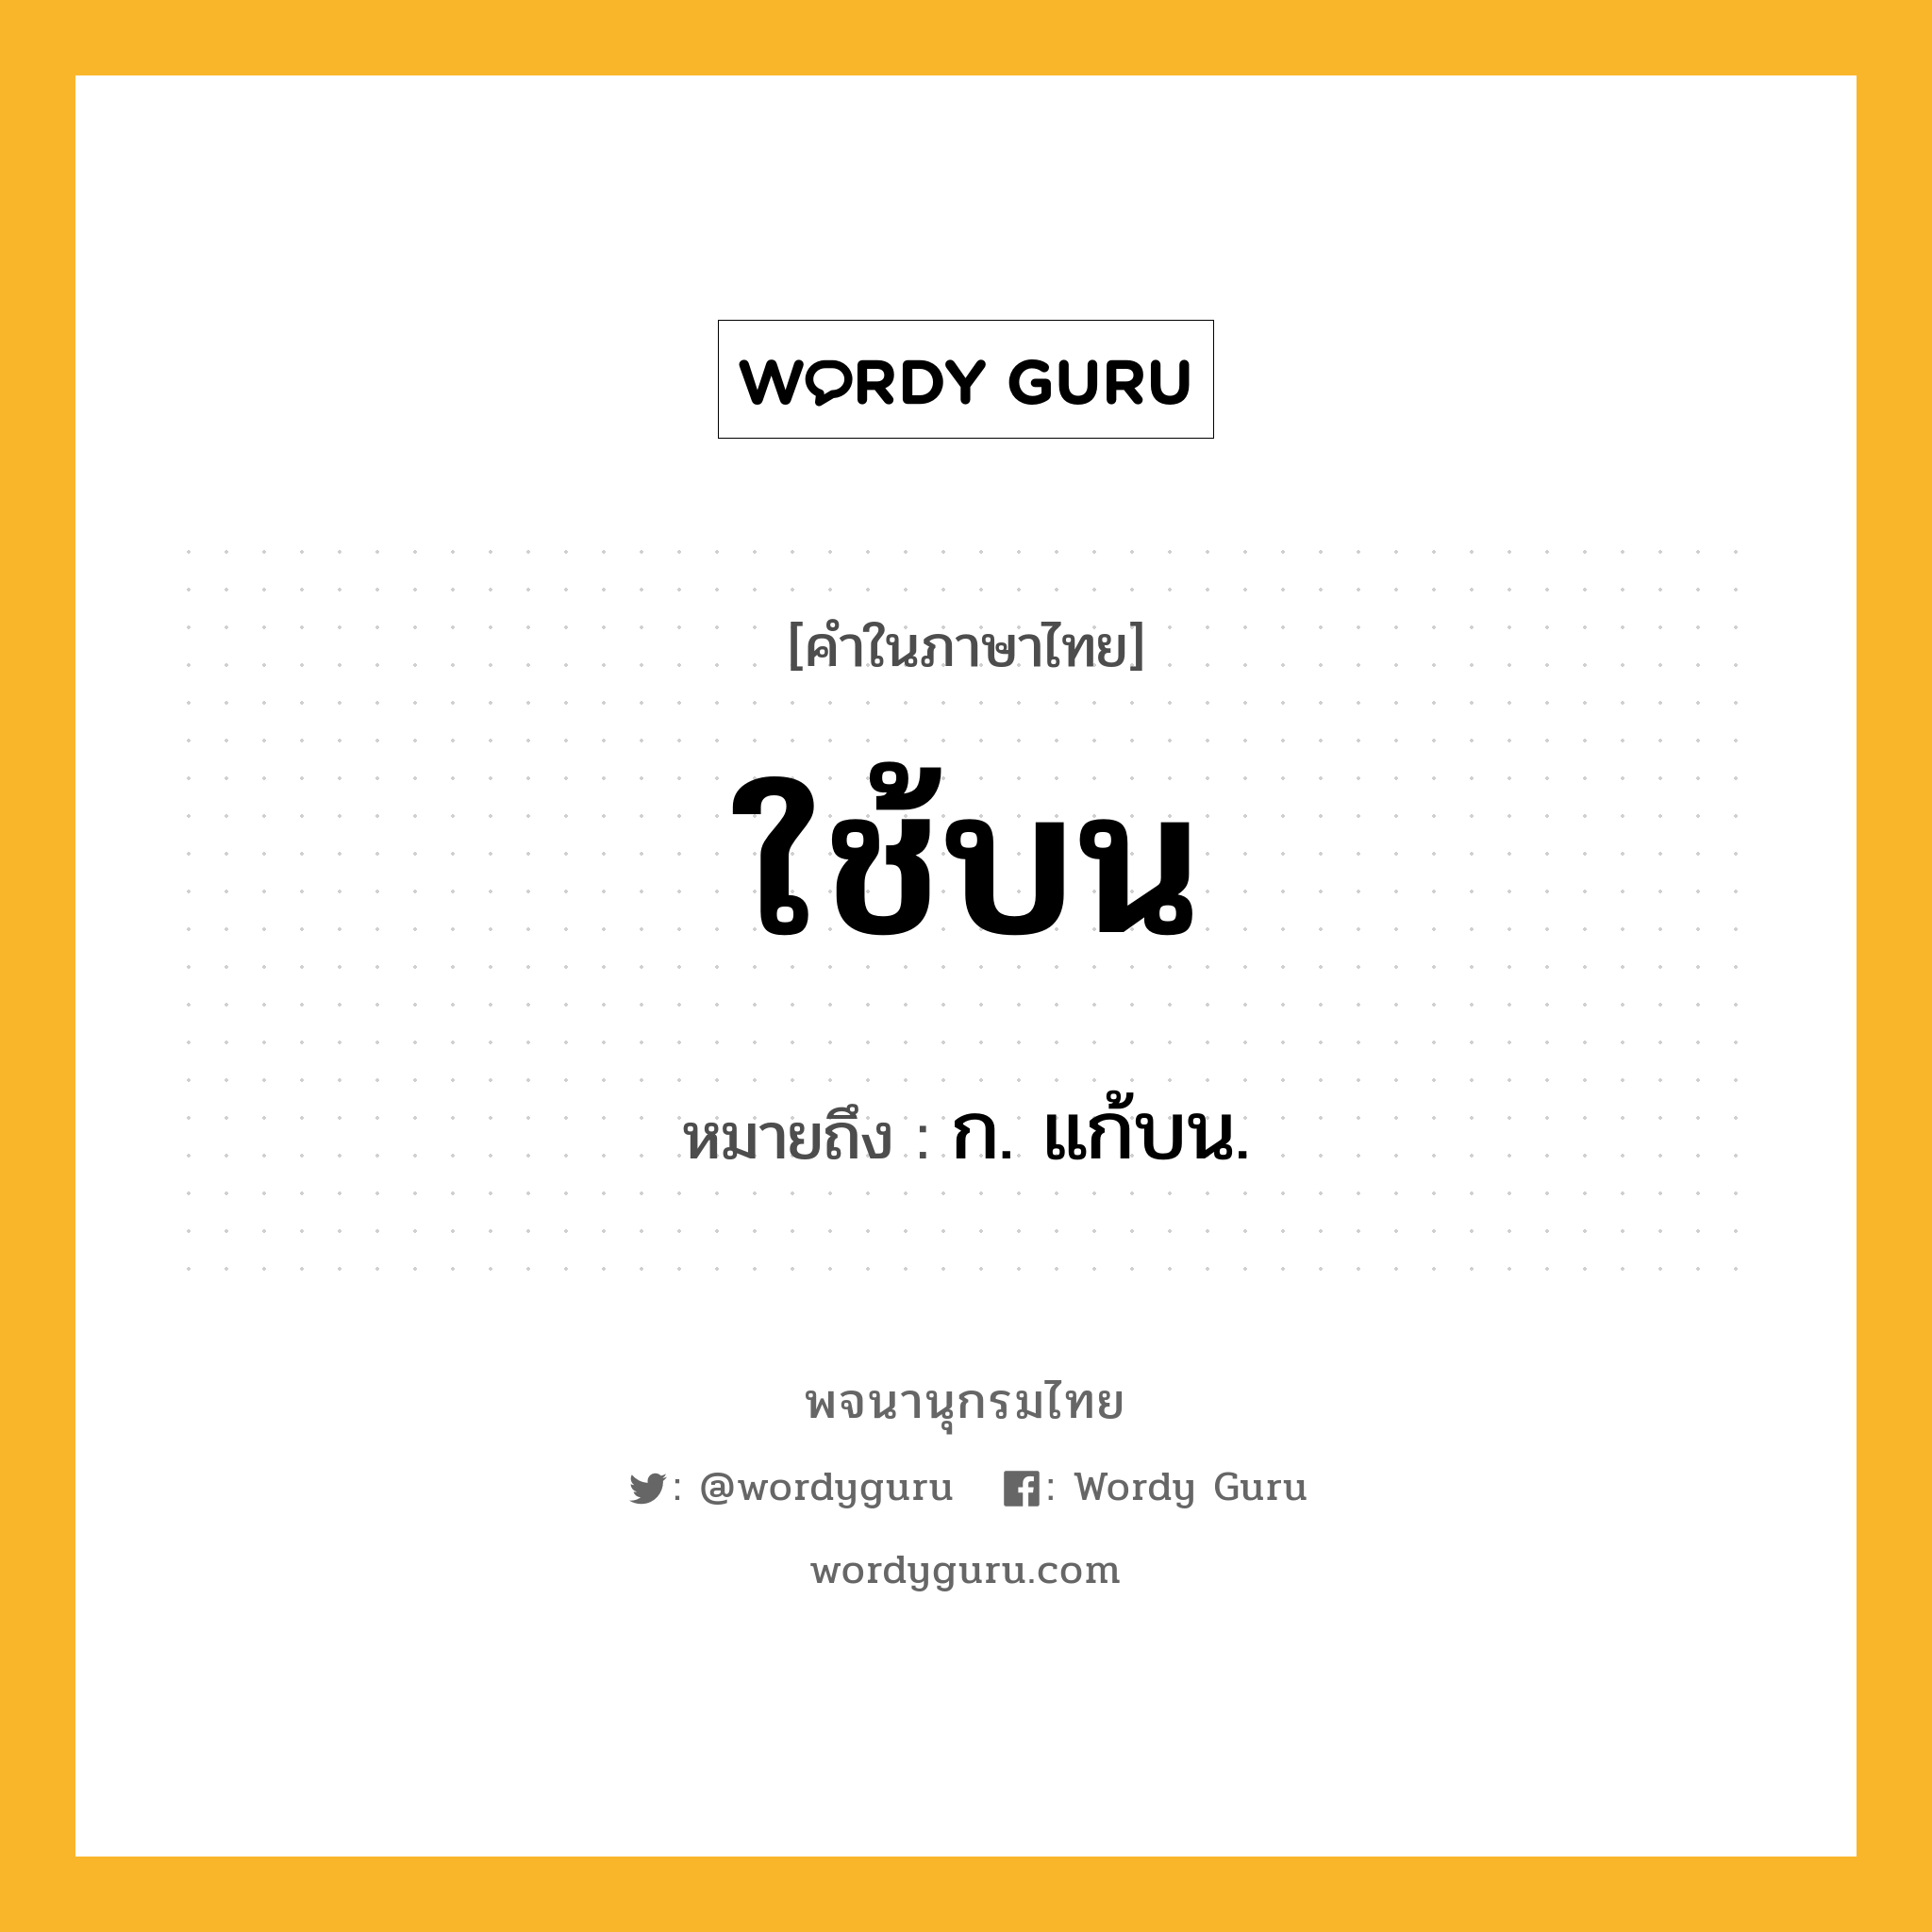 ใช้บน หมายถึงอะไร?, คำในภาษาไทย ใช้บน หมายถึง ก. แก้บน.